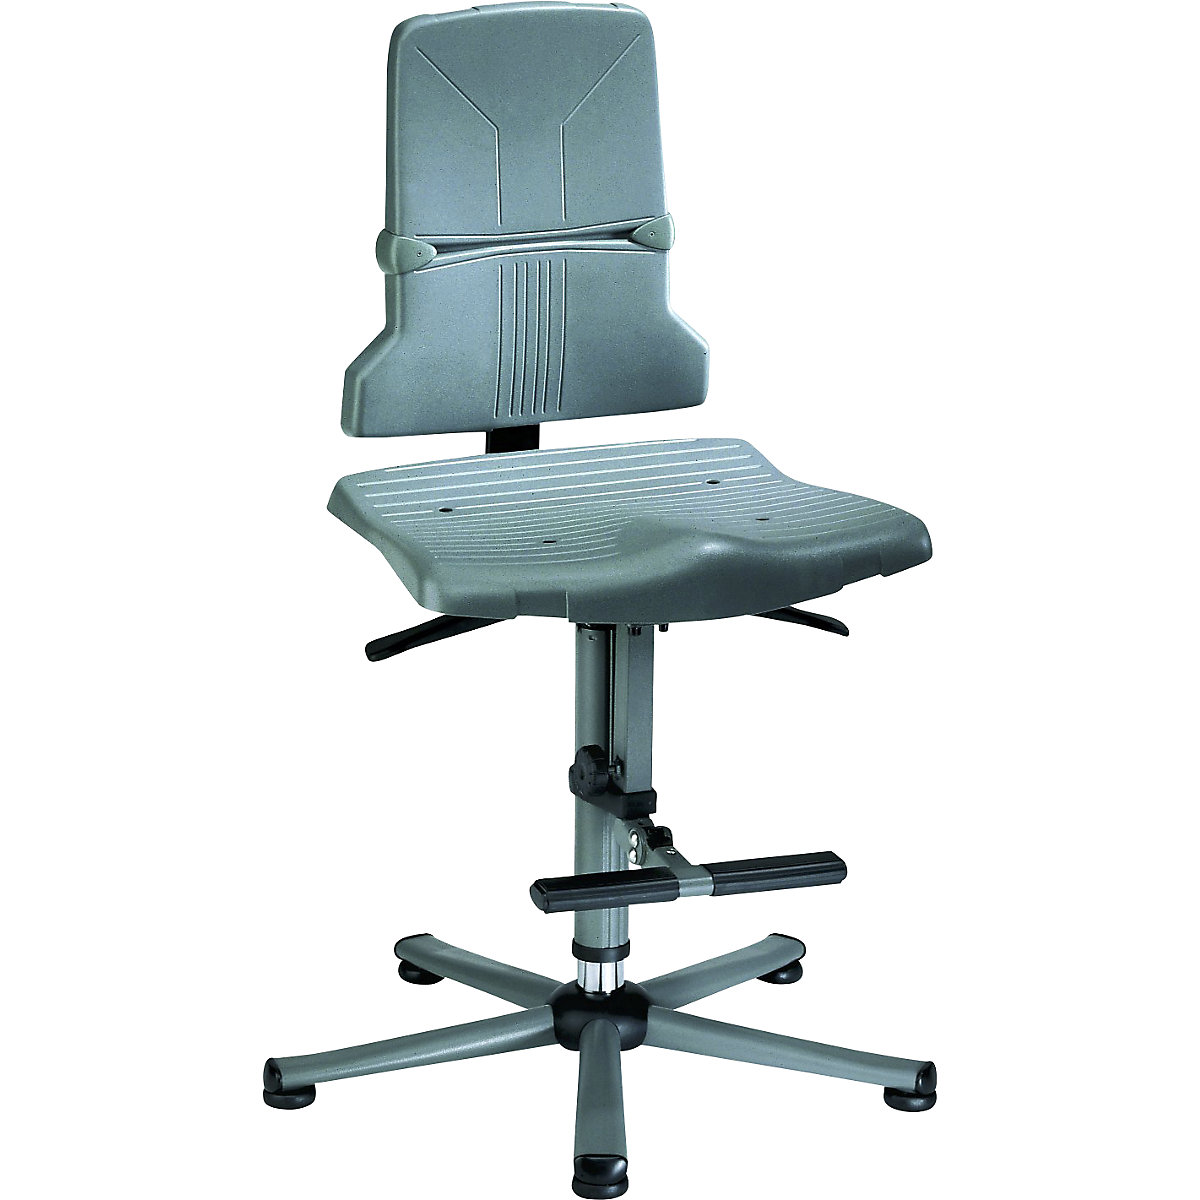 Pracovní otočná židle SINTEC – bimos, permanentní kontakt, přestavování sklonu sedáku, podstavec z ocelové trubky s pěti nohami s patkami a pomůckou pro výstup-7